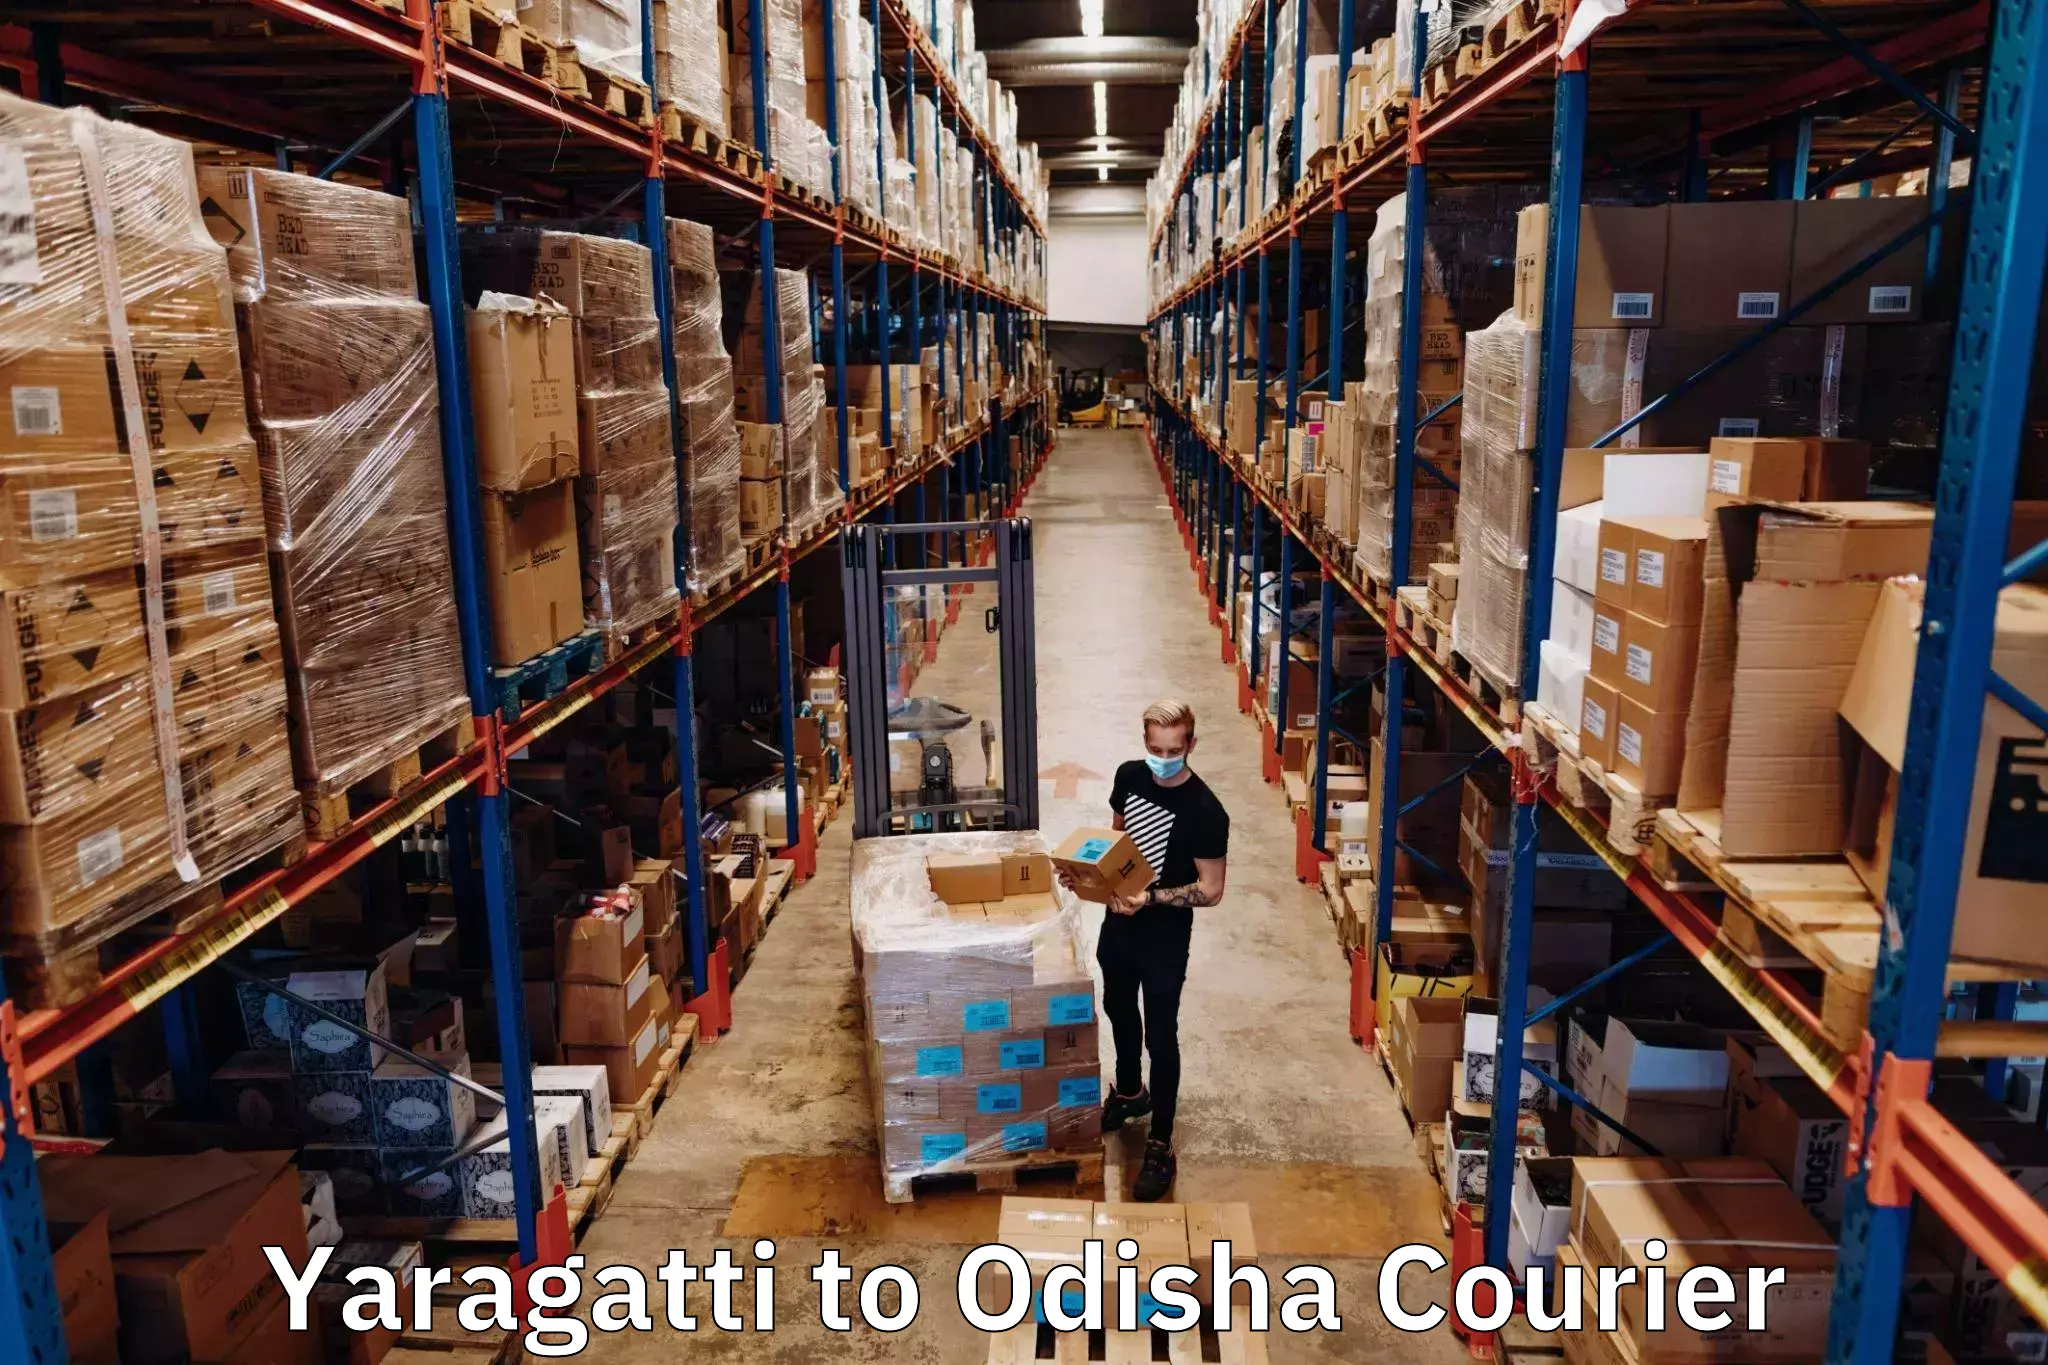 Reliable courier services Yaragatti to Tikiri